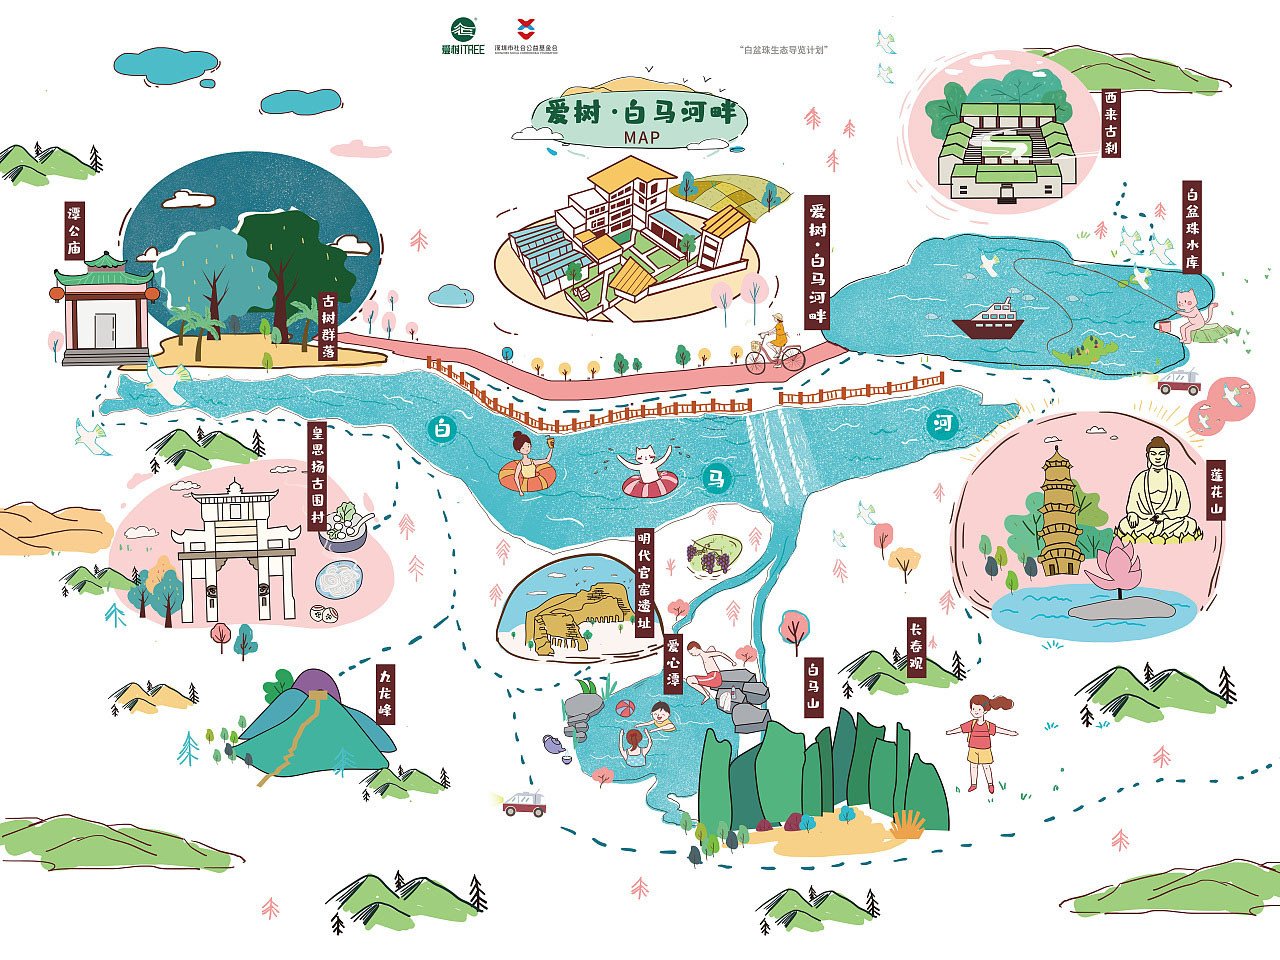 台州语音导览让景区游览更加智能